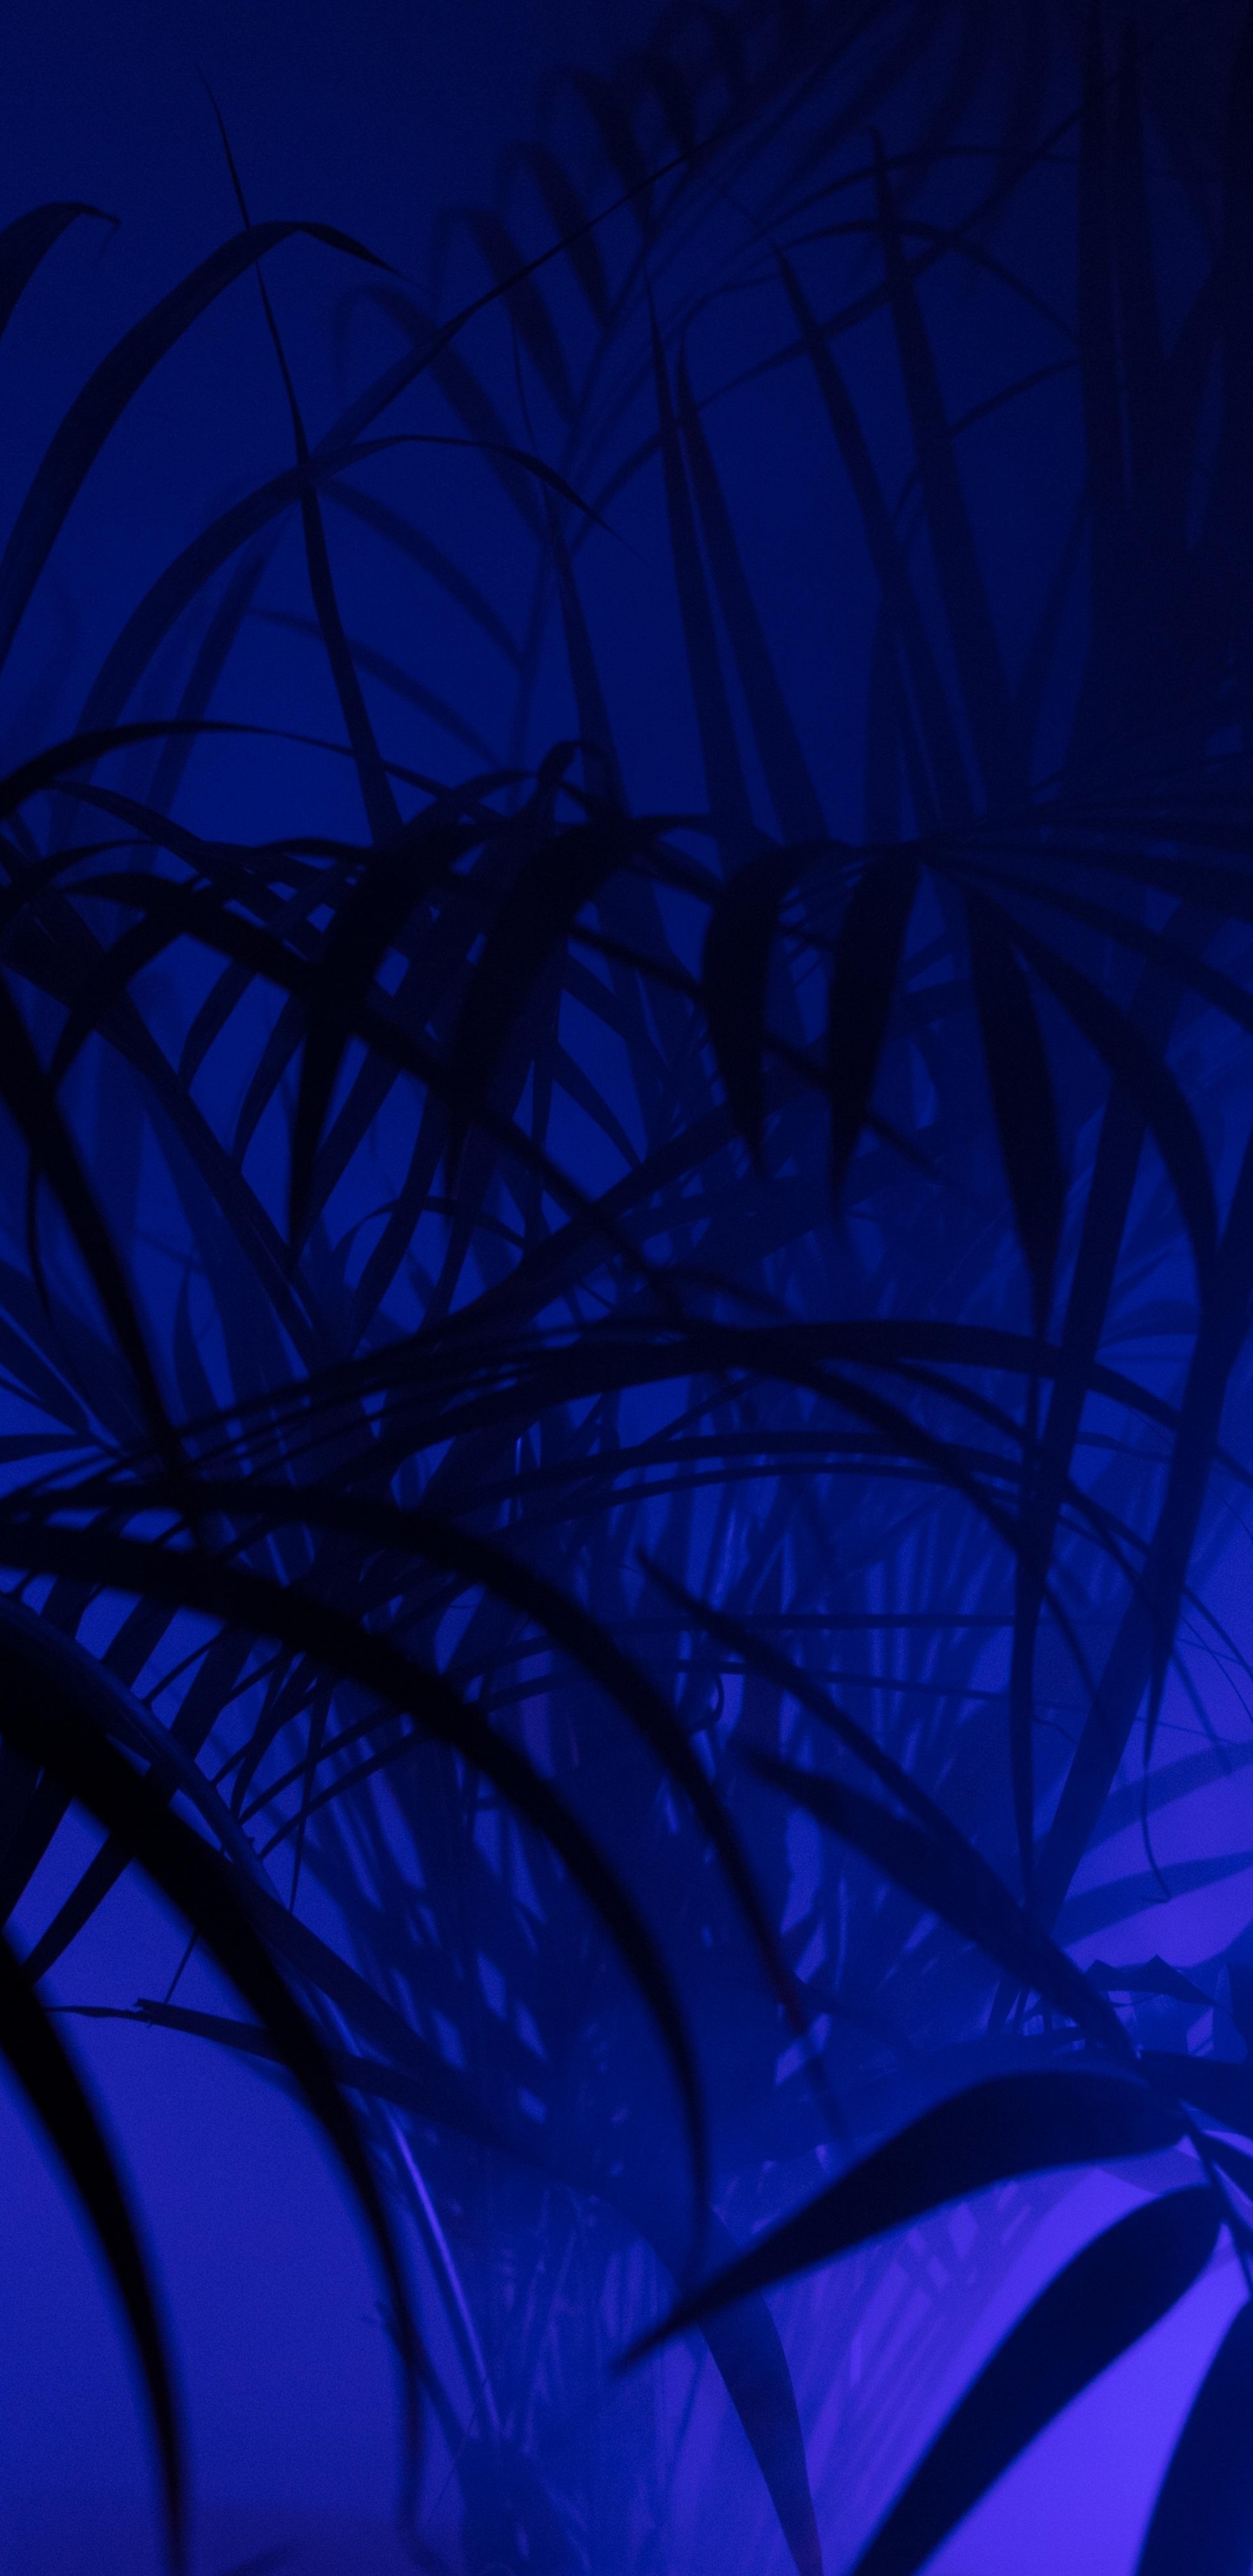 Grüne Pflanze in Blauem Hintergrund. Wallpaper in 1440x2960 Resolution